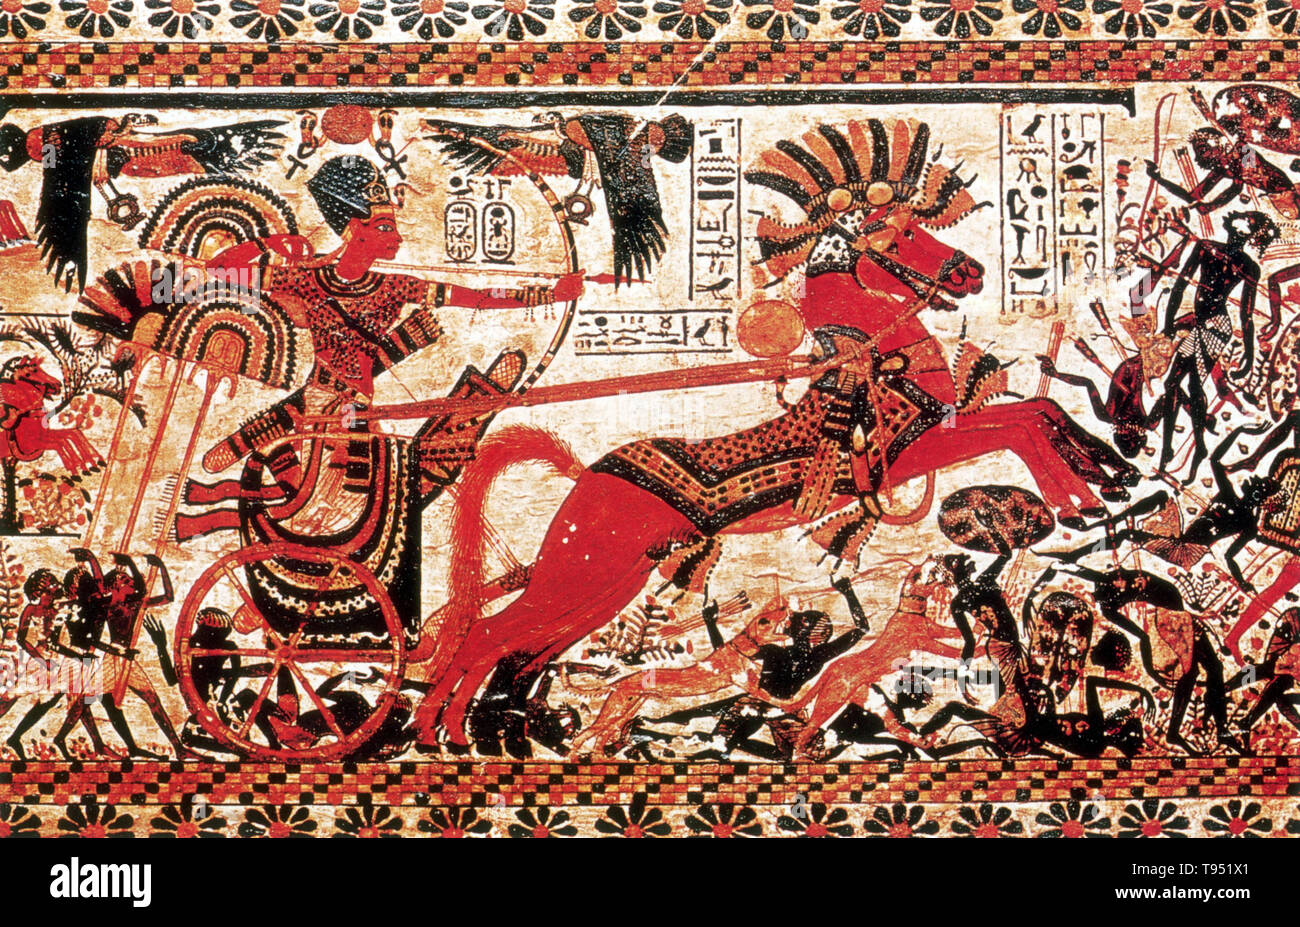 Détail de poitrine décoré de panneaux représentant Toutankhamon dans son char attaquant nubiens. Toutânkhamon était un pharaon égyptien de la xviiie dynastie (1332 à 1323 av. J.-C. a), pendant la période connue comme le nouveau royaume. Il était le fils d'Akhénaton et l'une des sœurs d'Akhenaton. Il est monté sur le trône en 1333 avant J.-C., à l'âge de neuf ou dix, prenant le nom du trône de Nebkhéperourê. Lorsqu'il devint roi, il épouse sa demi-sœur, Ankhesenpaaten, qui plus tard a changé son nom à Ankhesenamun. Banque D'Images